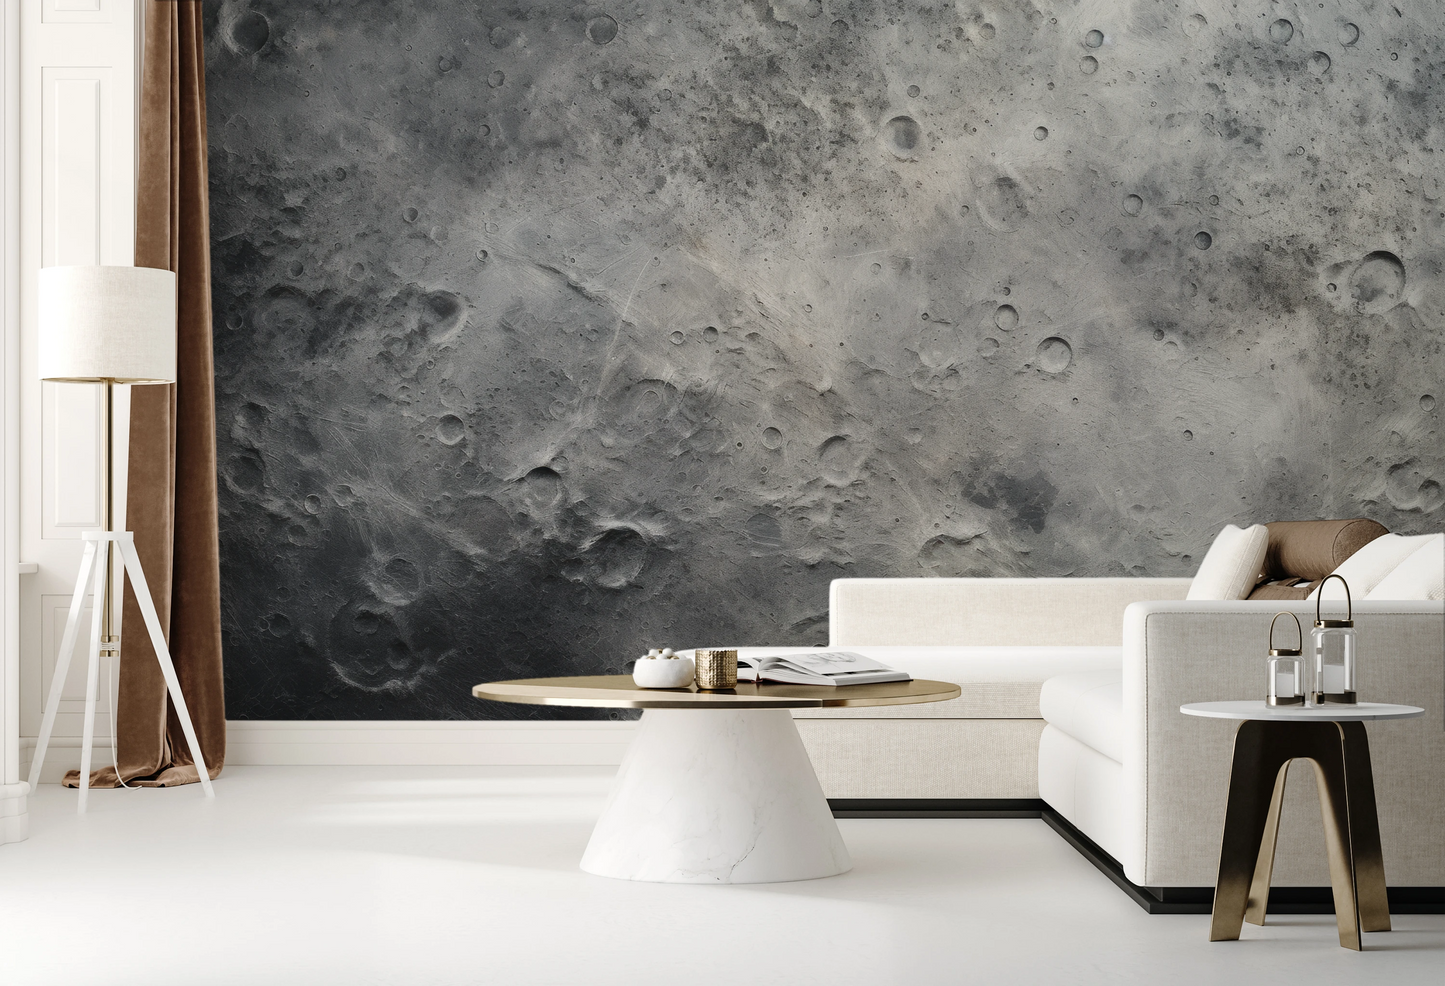 Fototapeta artystyczna o nazwie Lunar Craters pokazana w aranżacji wnętrza.